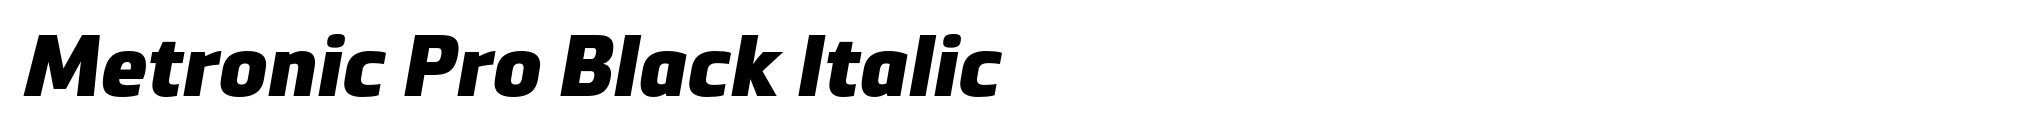 Metronic Pro Black Italic image